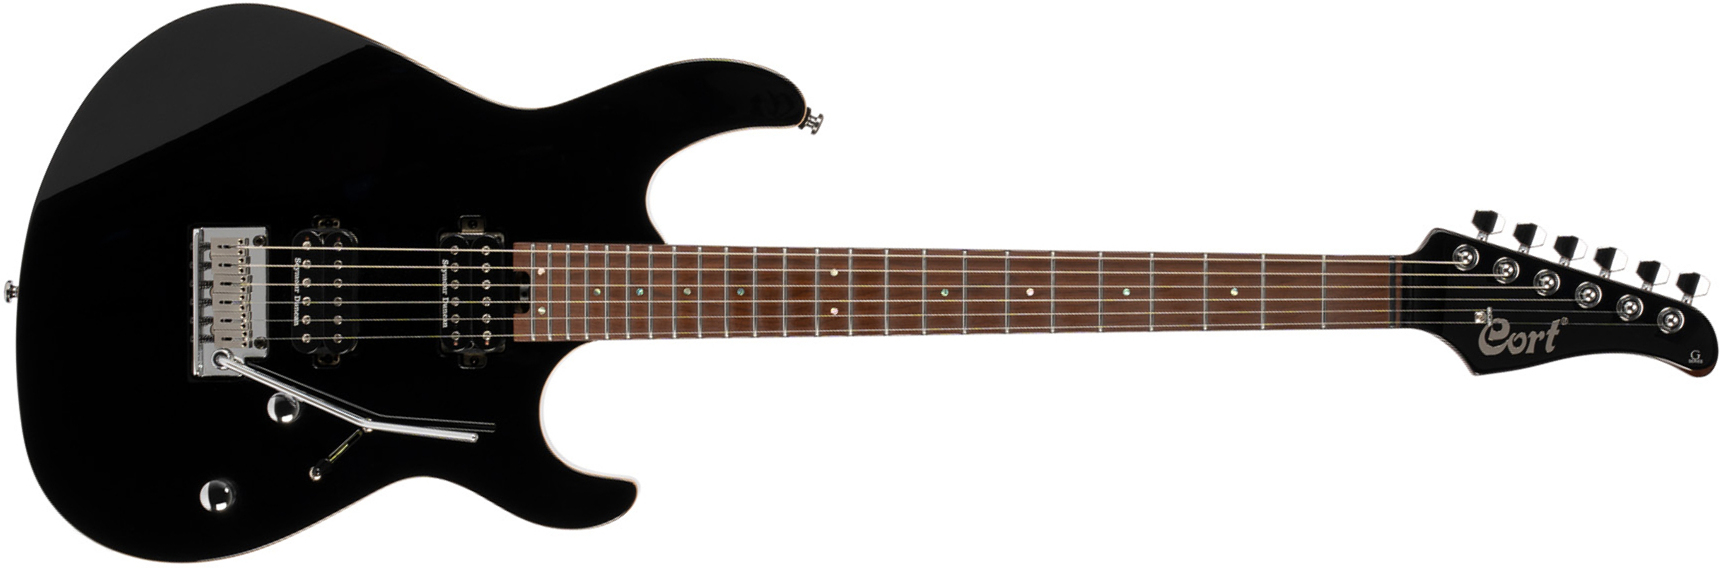 Cort G300 Pro Hh Trem Mn - Black - Str shape electric guitar - Main picture